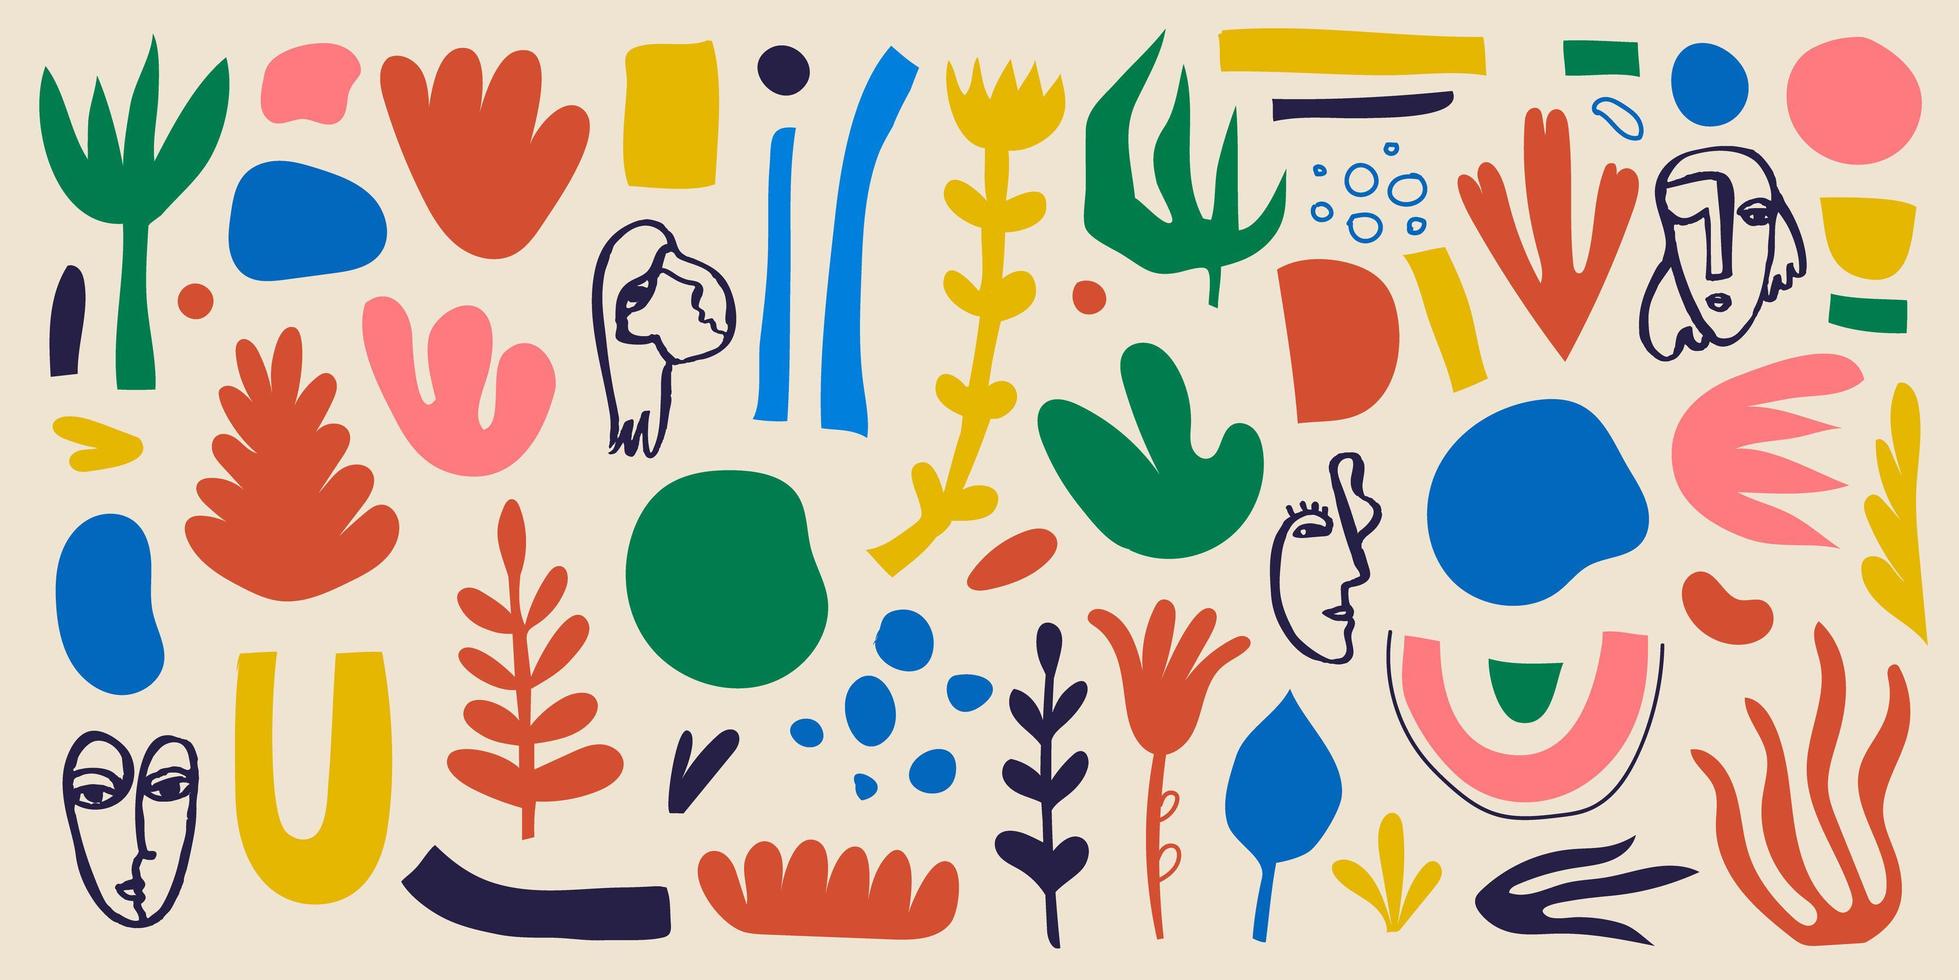 modello di collage vettoriale, sfondo. varie forme disegnate a mano e oggetti scarabocchiati, fiori, foglie, volti umani. arte astratta contemporanea moderna vettore